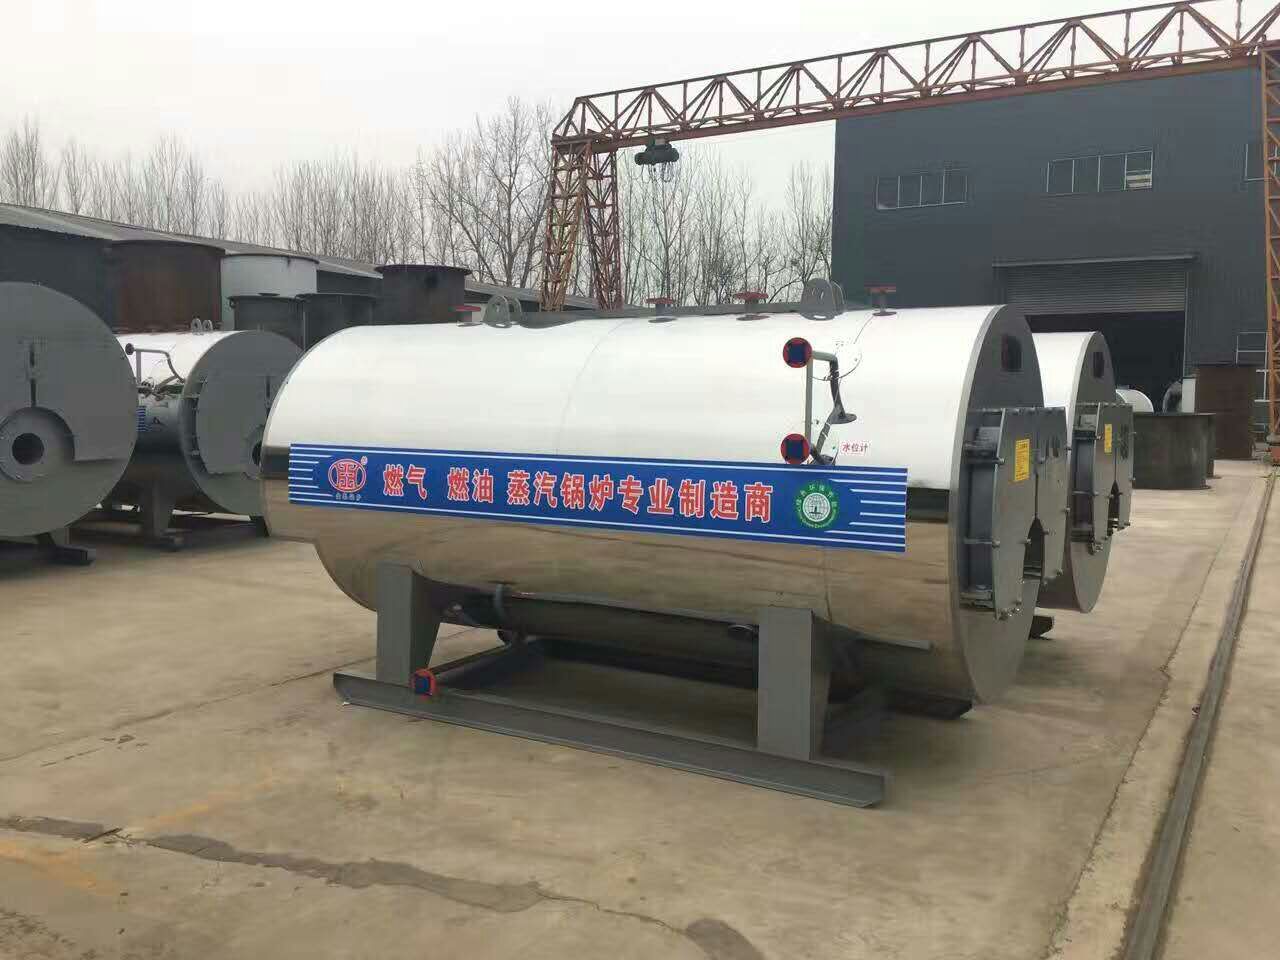 黑龍江10噸燃油蒸汽鍋爐價格走勢